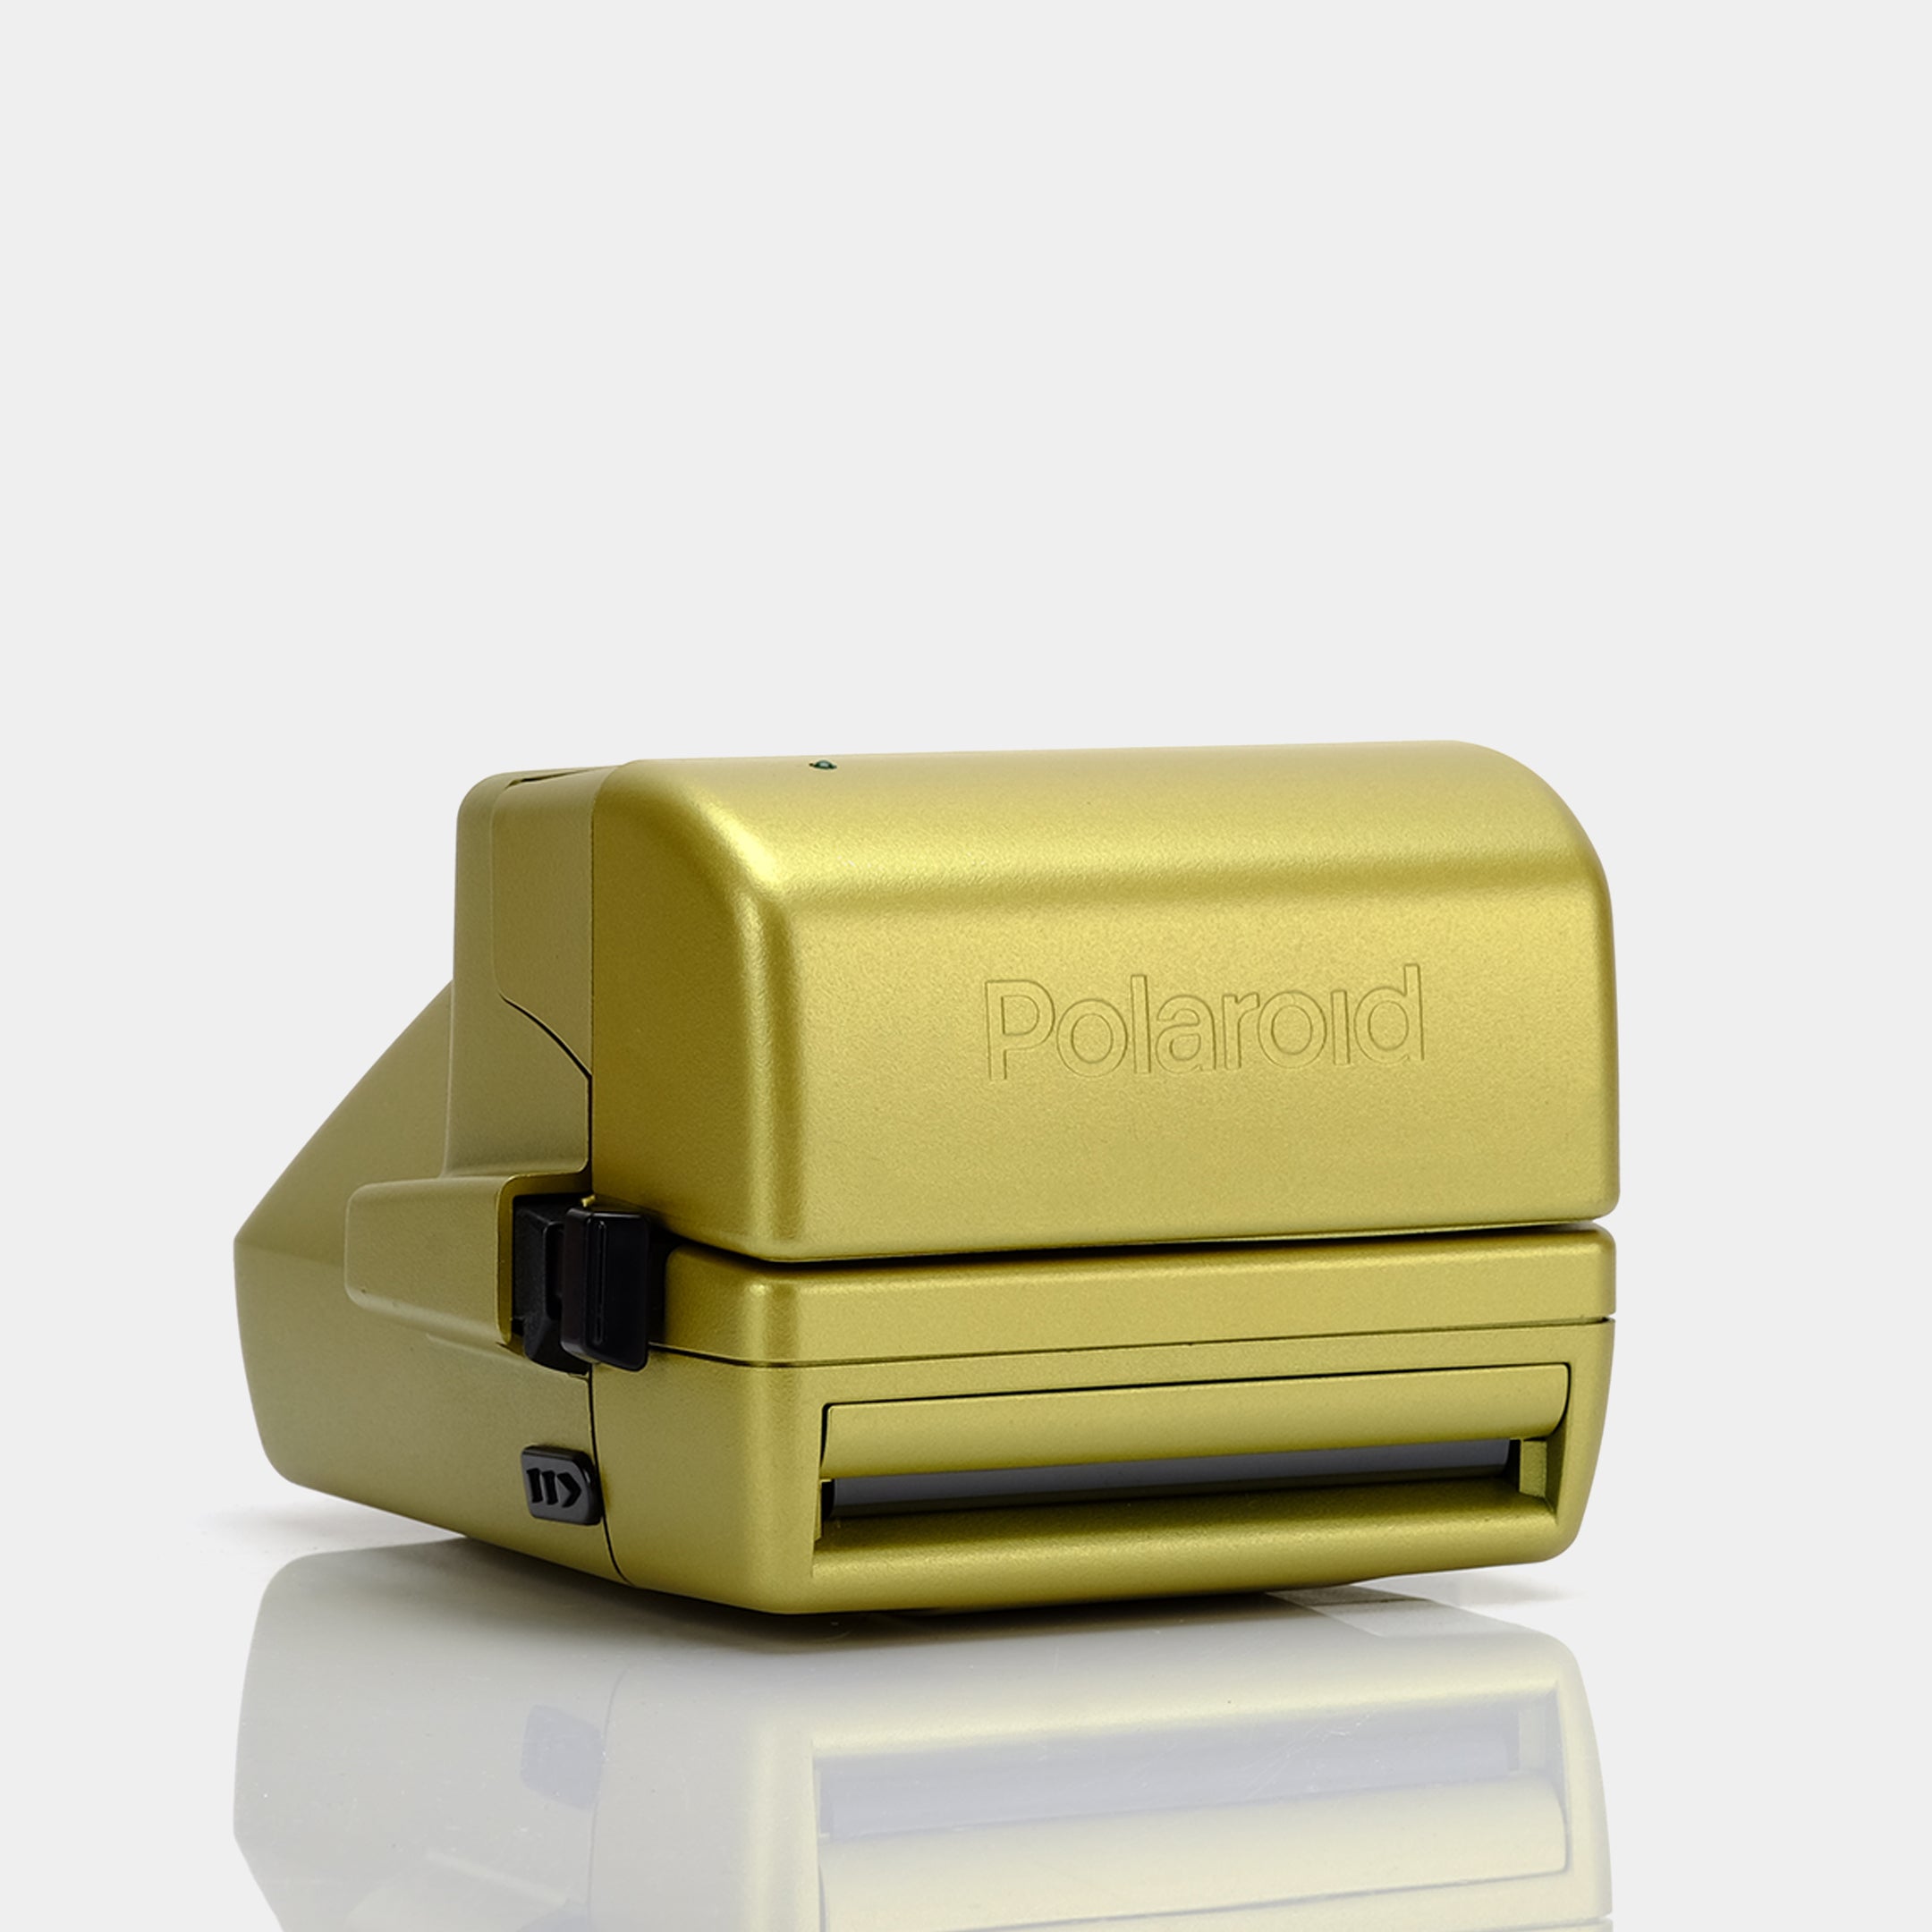 Polaroid 600 OneStep Autofocus Gold Instant Film Camera